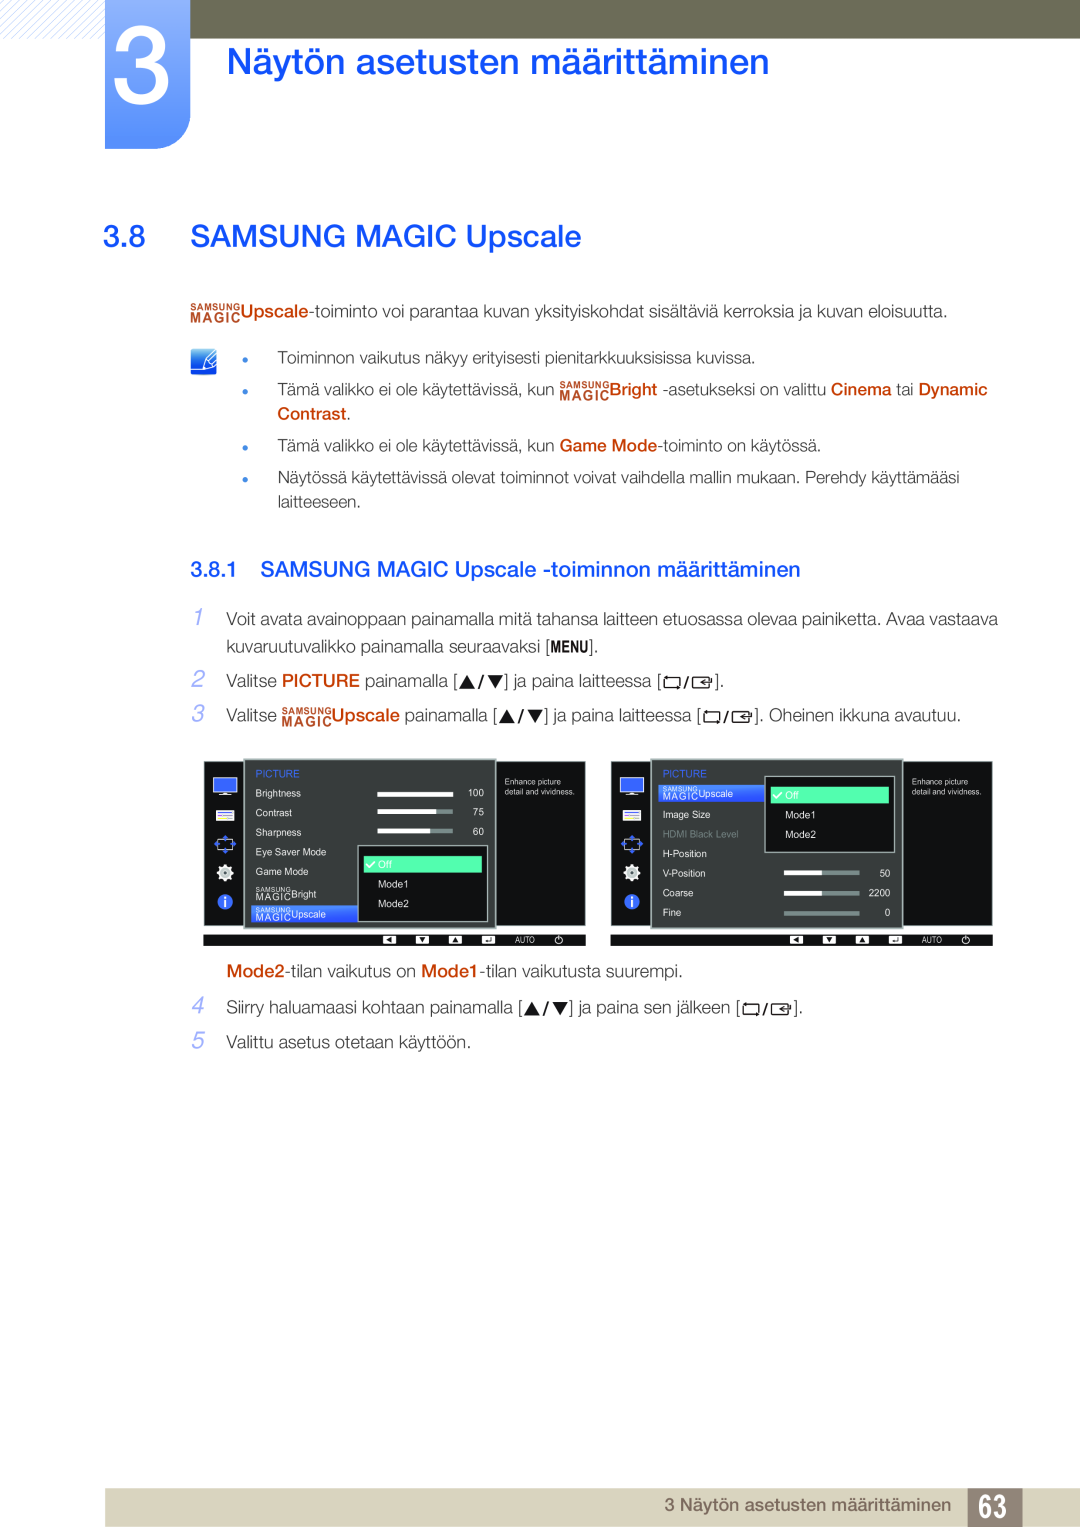 Samsung LS24E65UXWF/EN, LS23E65UDC/EN SAMSUNG MAGIC Upscale -toiminnon määrittäminen, 3 Näytön asetusten määrittäminen 